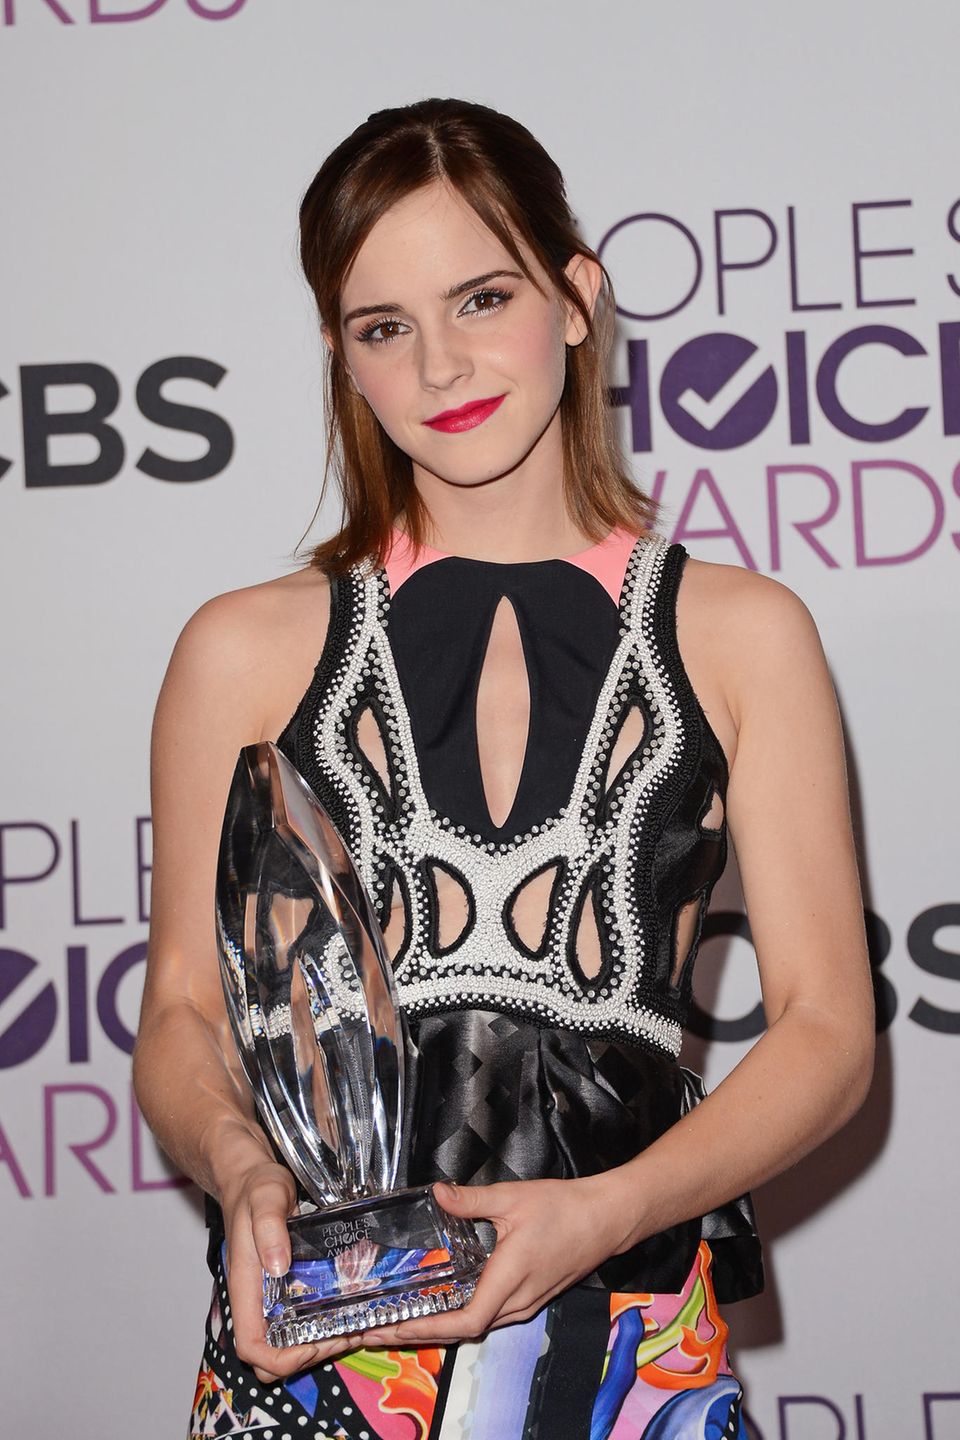 Bei den People's Choice Awards sind Emmas Haare bereits wieder ein gutes Stück gewachsen und reichen ihr fast auf die Schultern. Dem roten Lippenstift ist sie auch bei diesem Event treu geblieben. 